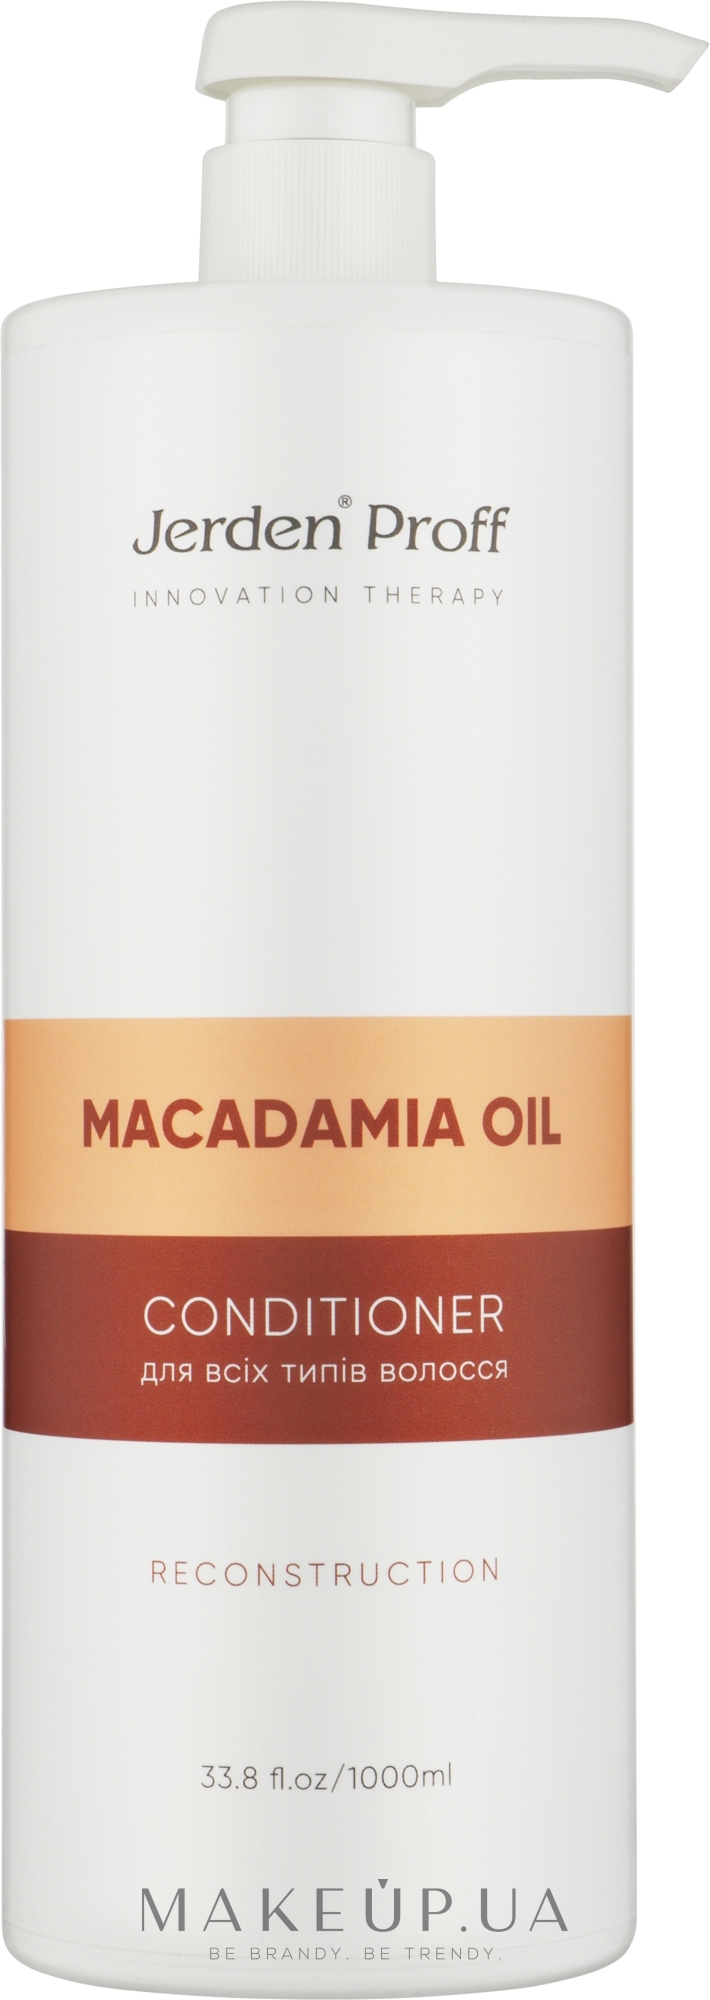 Кондиционер для волос с маслом Макадамии - Jerden Proff Macadamia Oil Conditioner — фото 1000ml